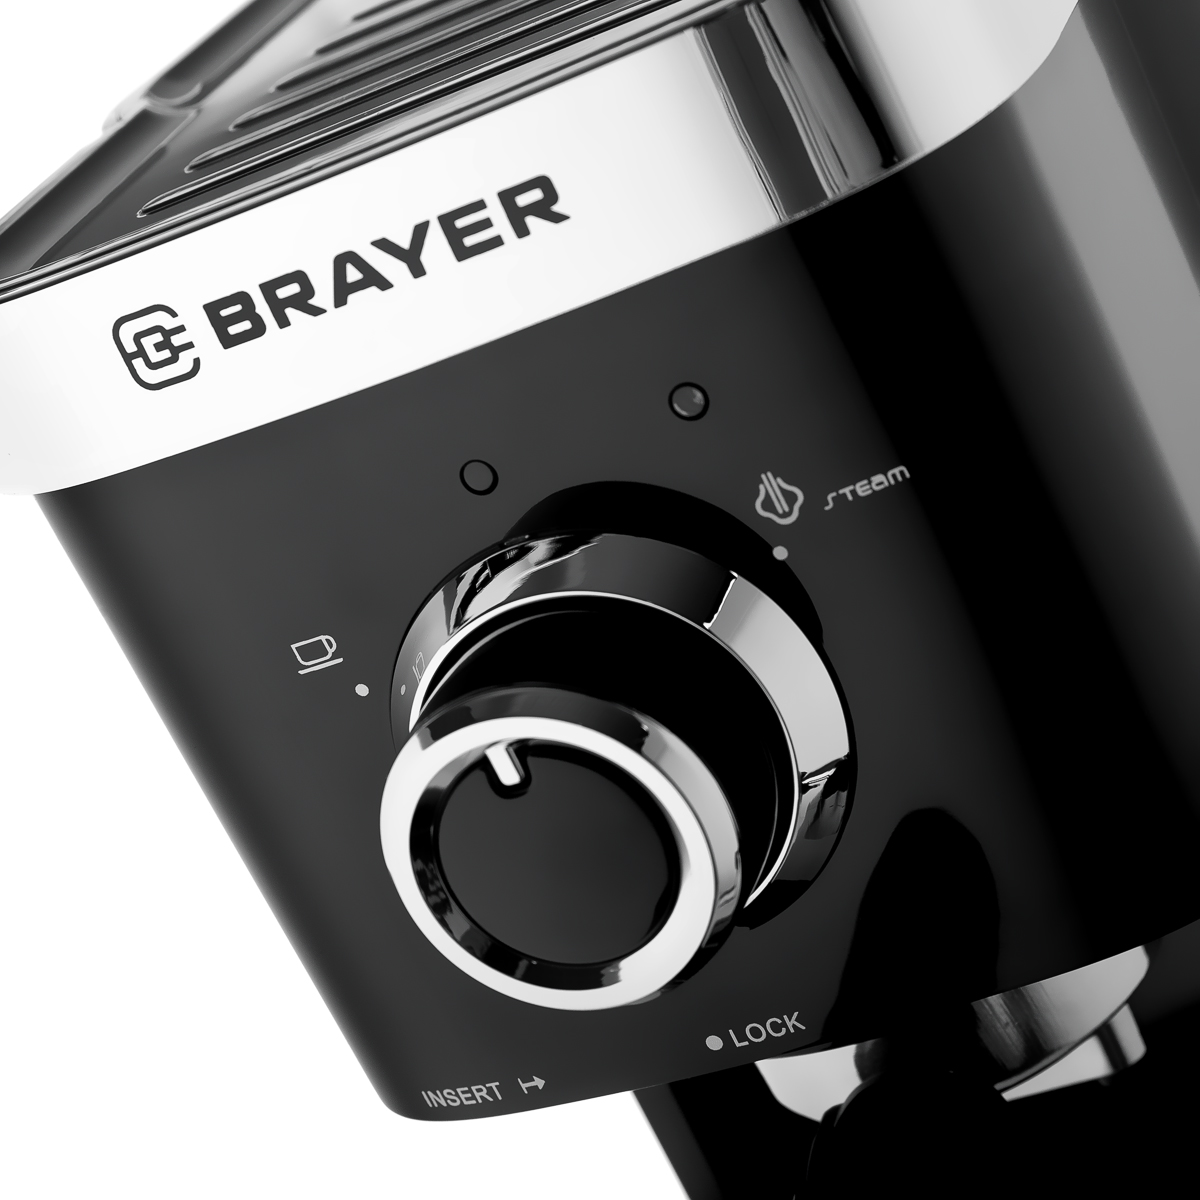 Кофеварка рожковая BRAYER BR1100, черный